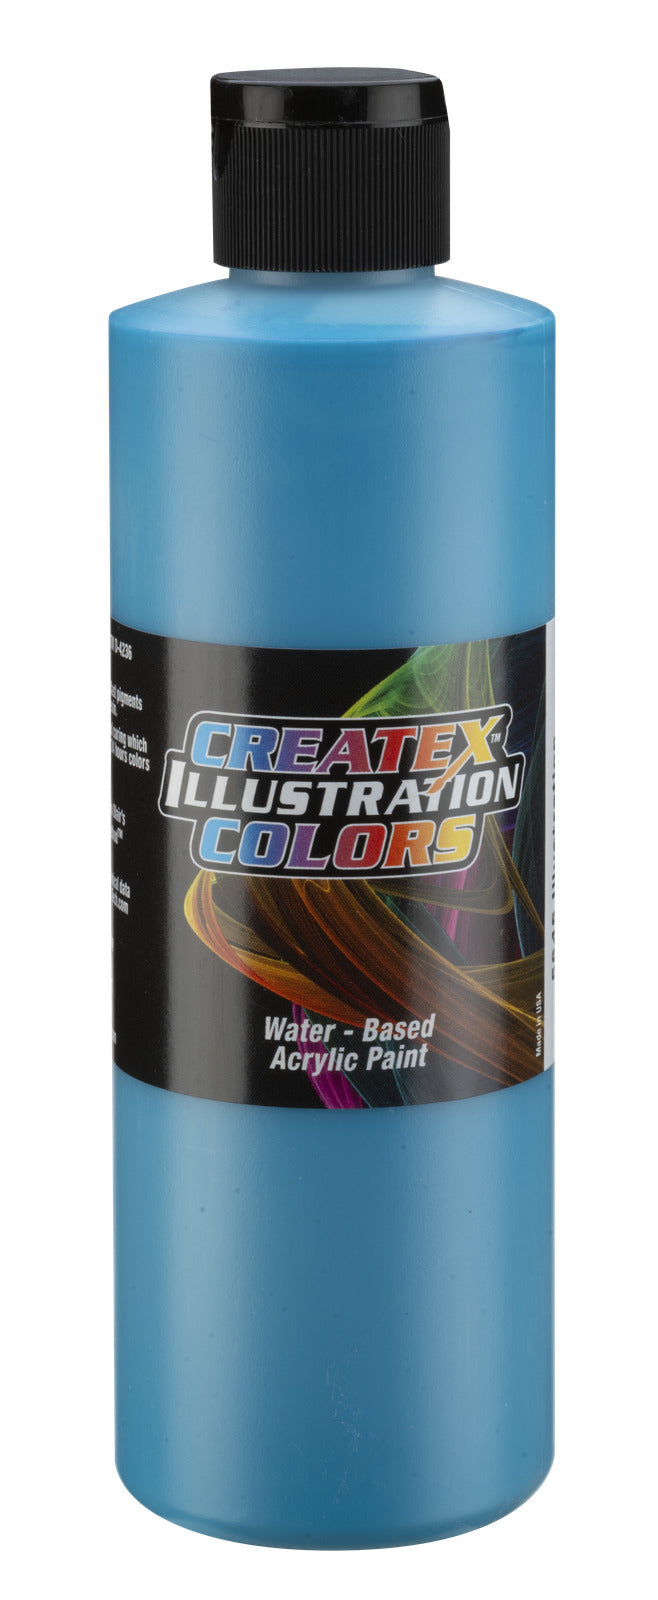 Createx Illustration Colors Teal 5645 Createx